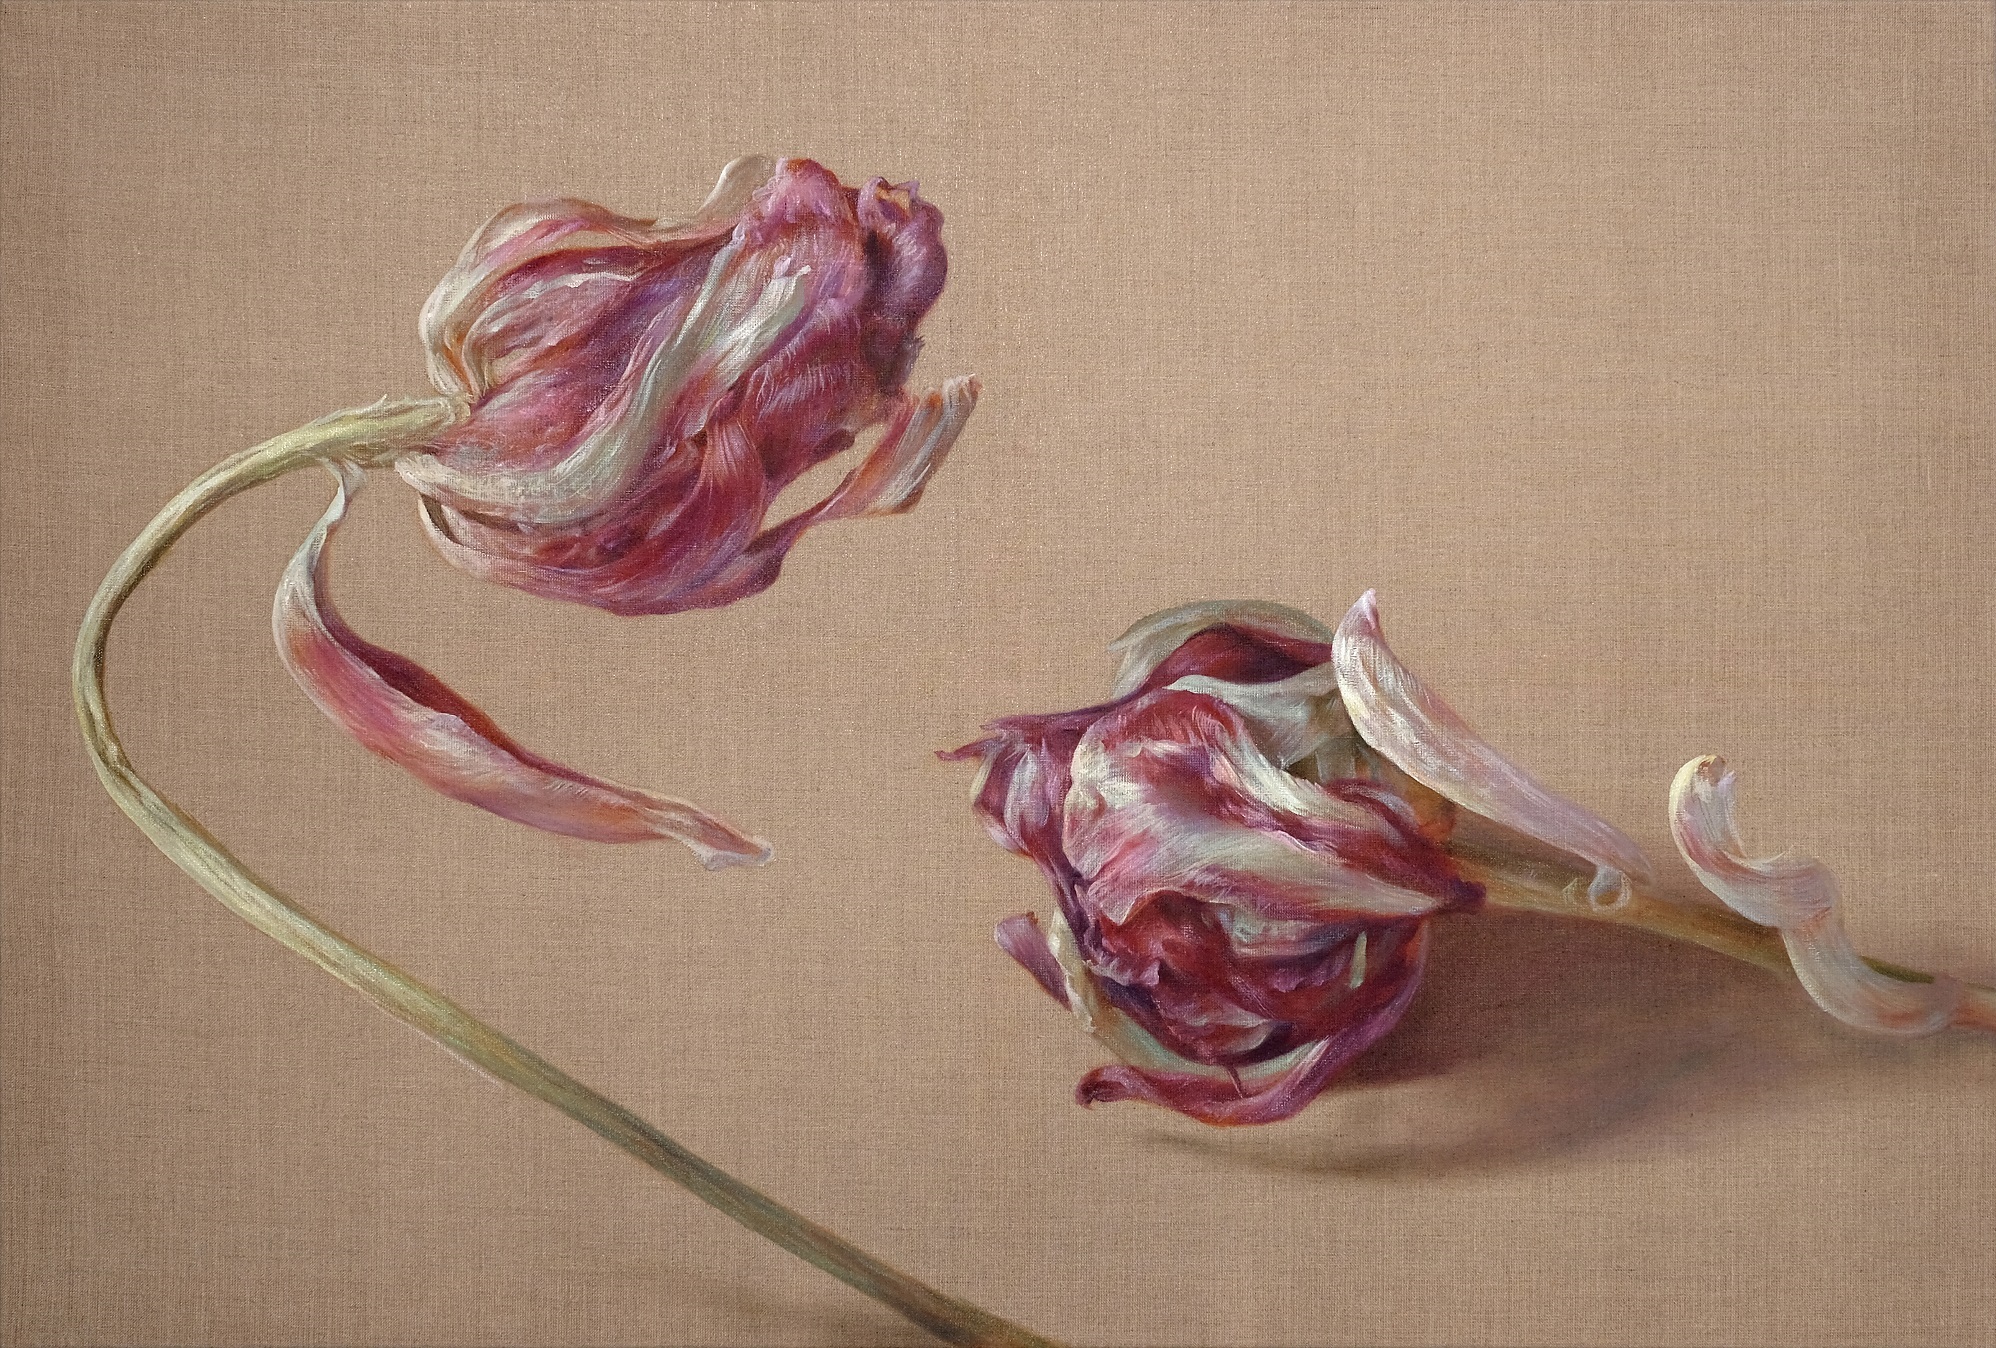 'Embrace (Tulip)', Marieluise Bantel, Oil on canvas, 80 x 120 cm